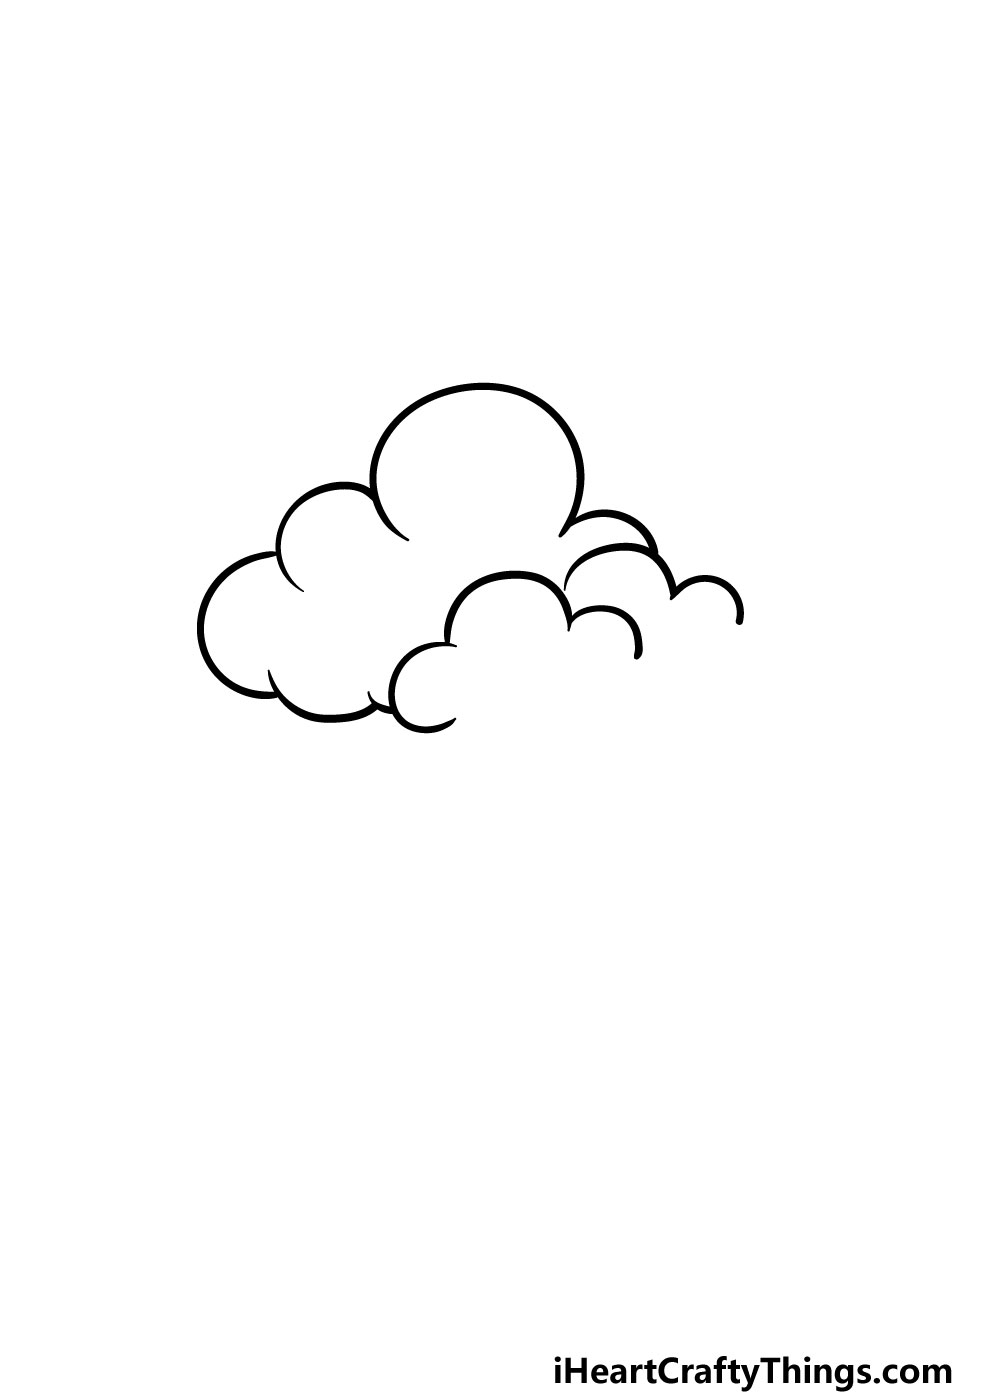 Lệnh Vẽ đám Mây Trong Cad  Kkhouse